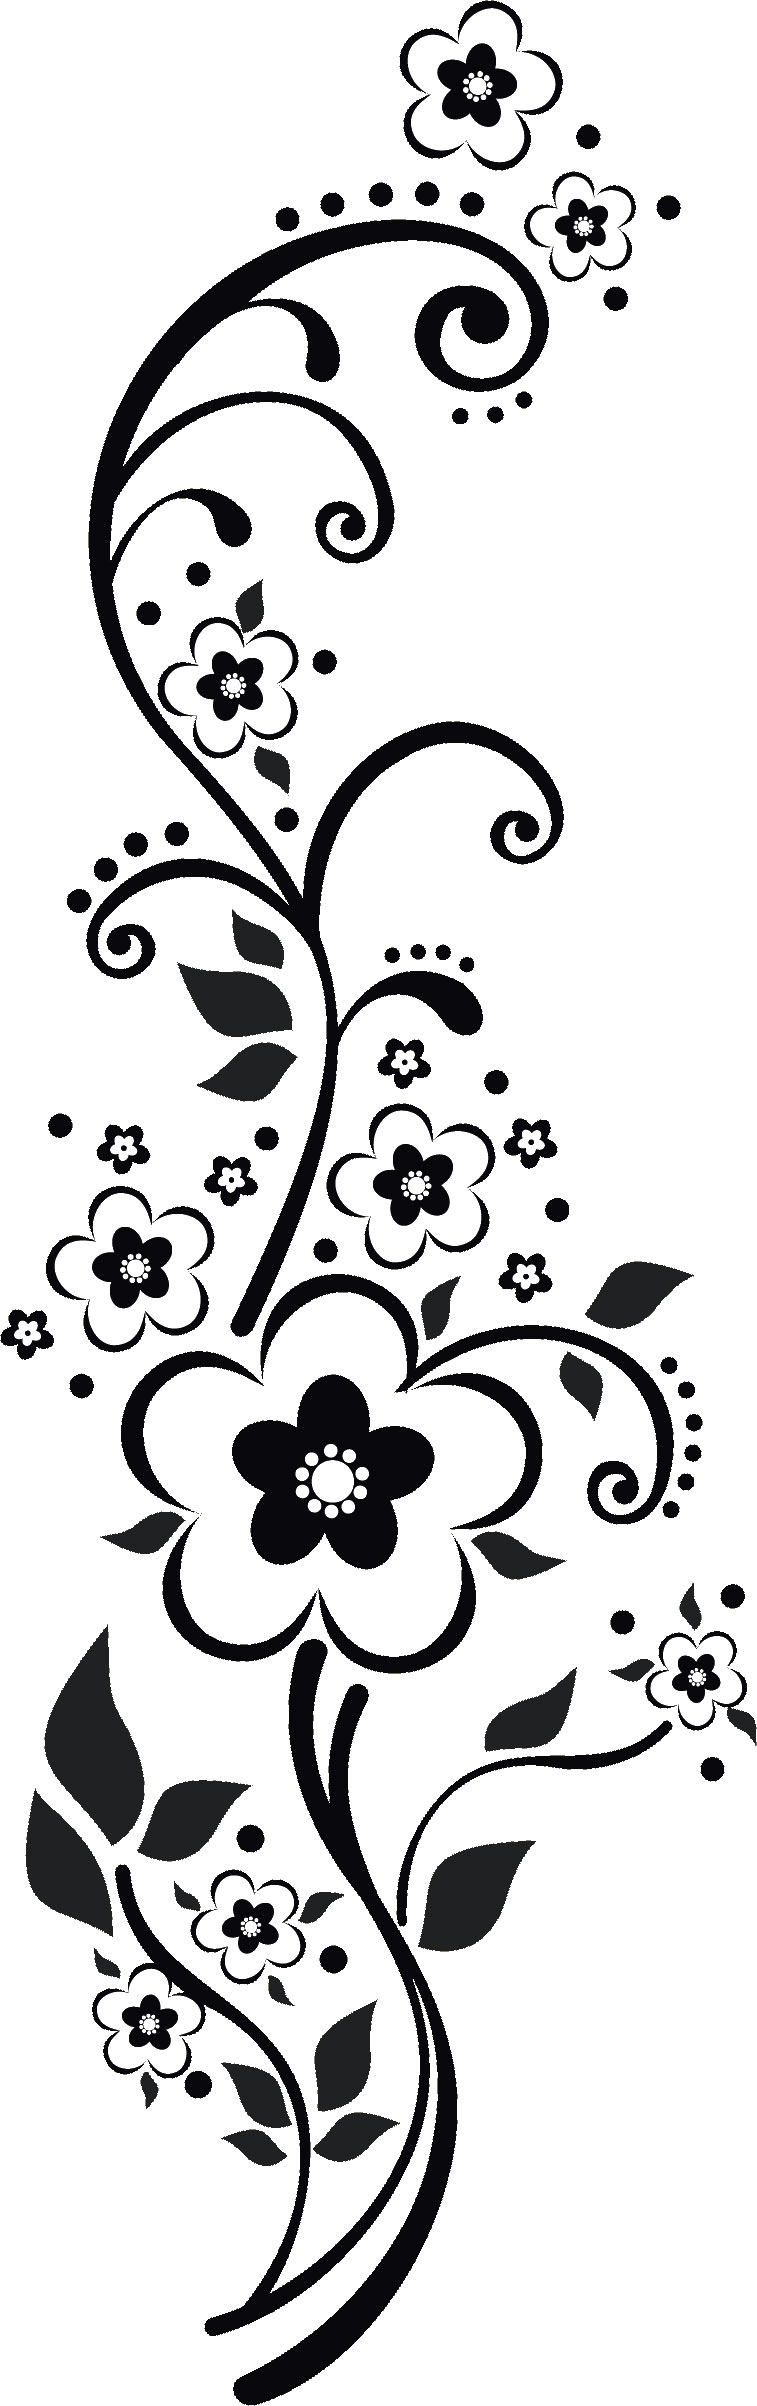 花のイラスト フリー素材 白黒 モノクロno 309 白黒 茎葉 縦長